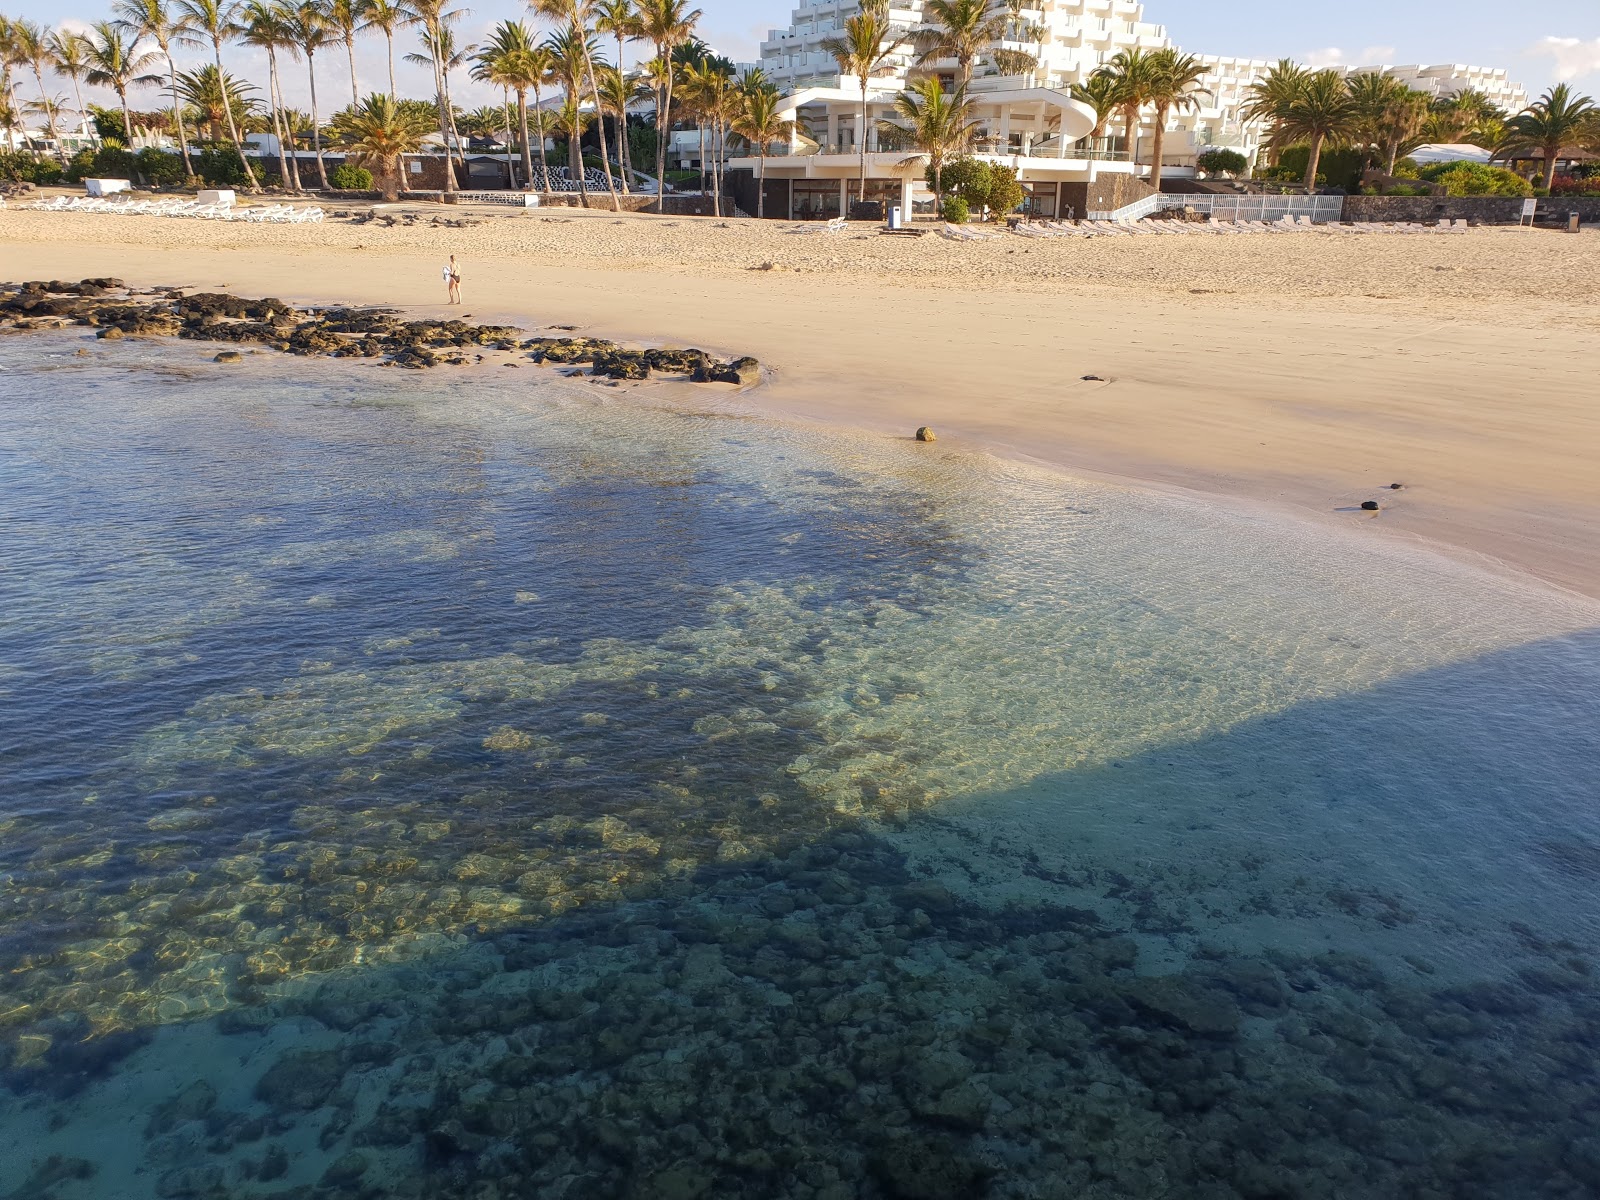 Playa de los Charcos'in fotoğrafı açık yeşil su yüzey ile